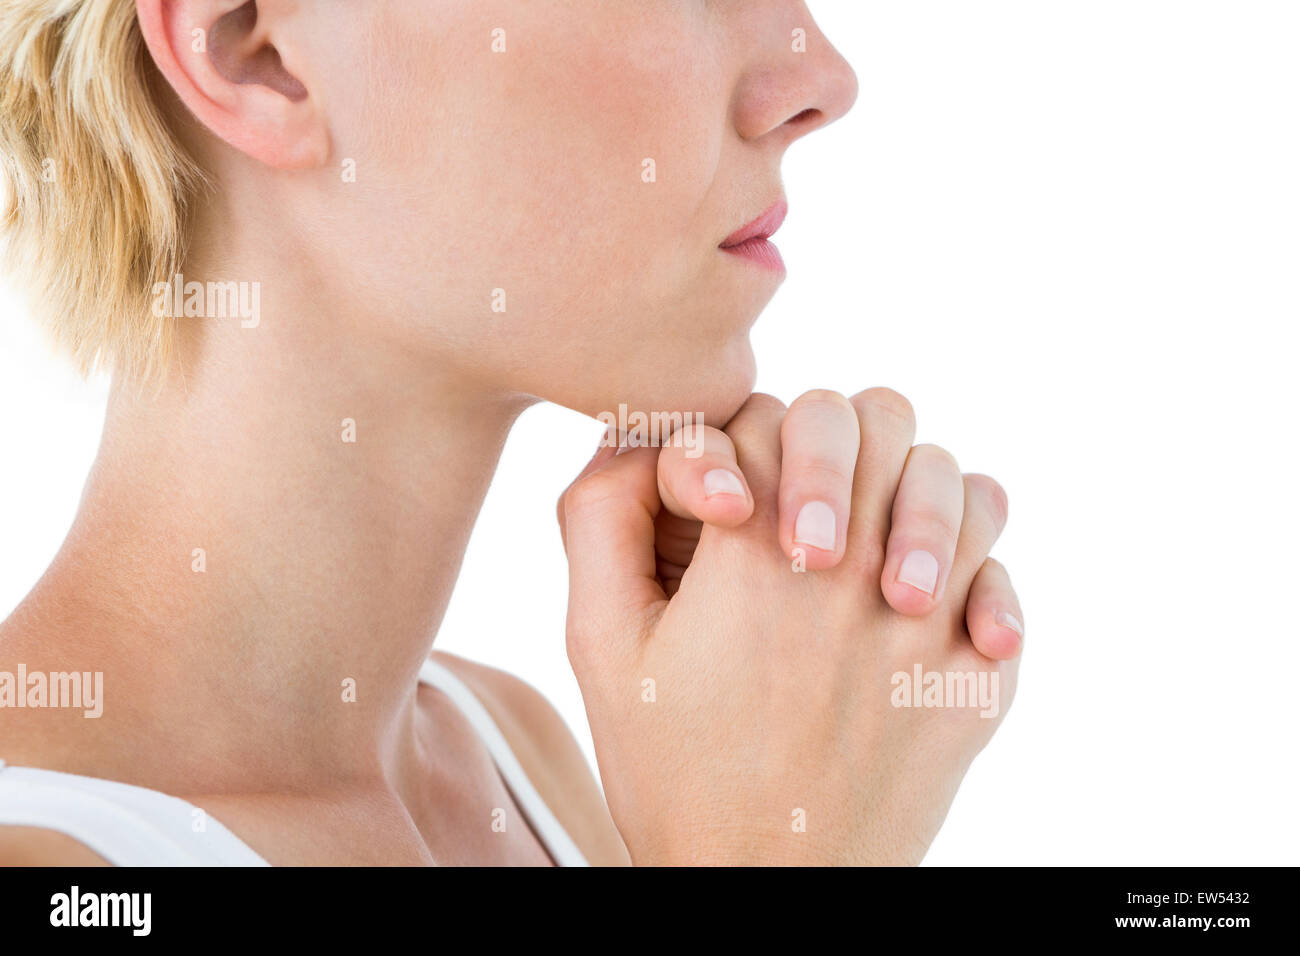 Pretty blonde woman praying Stock Photo